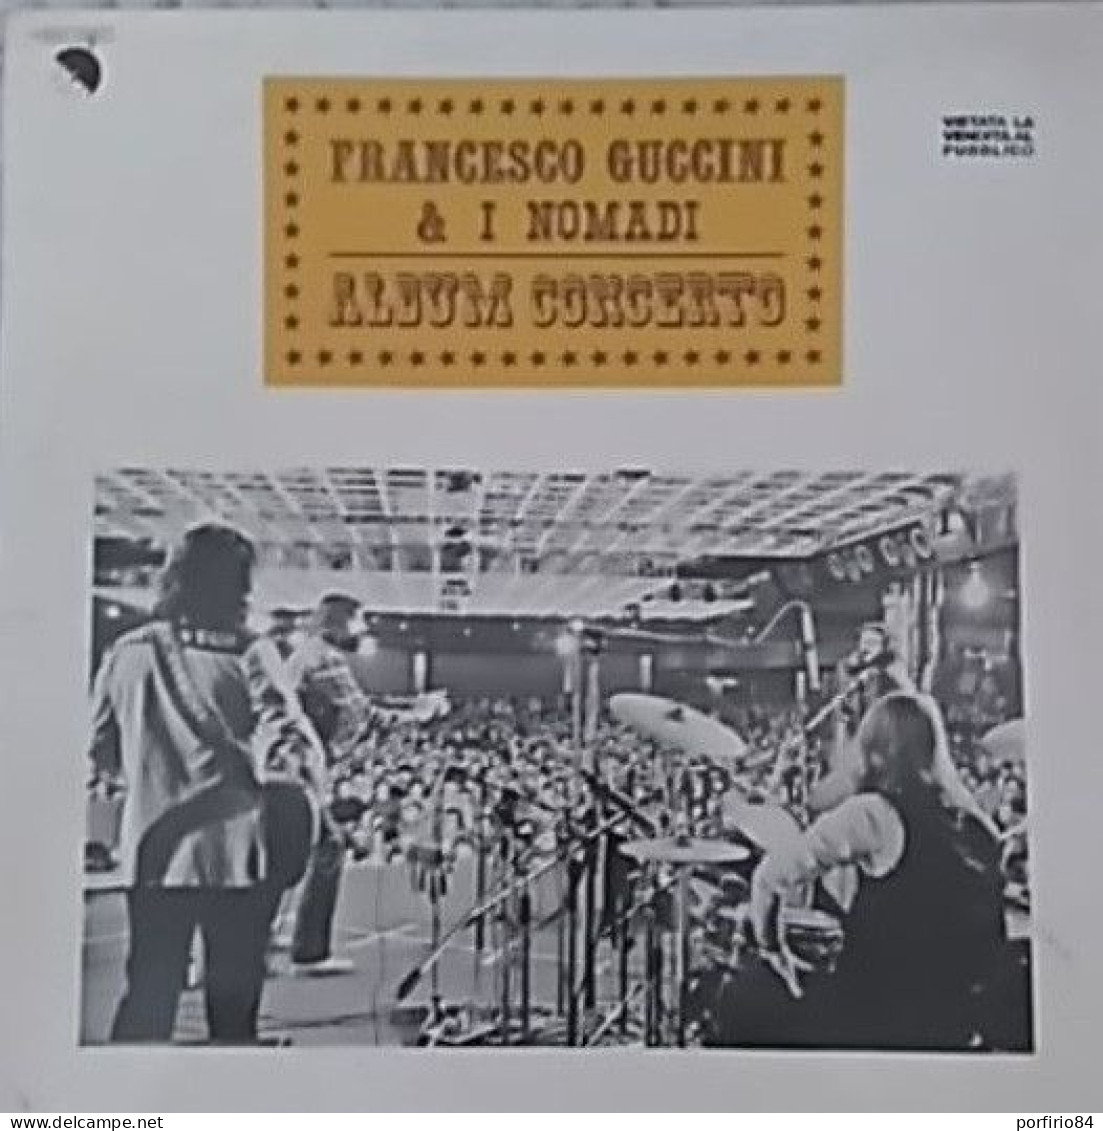 FRANCESCO GUCCINI & I NOMADI ALBUM CONCERTO LP 33 GIRI PROMO DEL 1979 - Autres - Musique Italienne